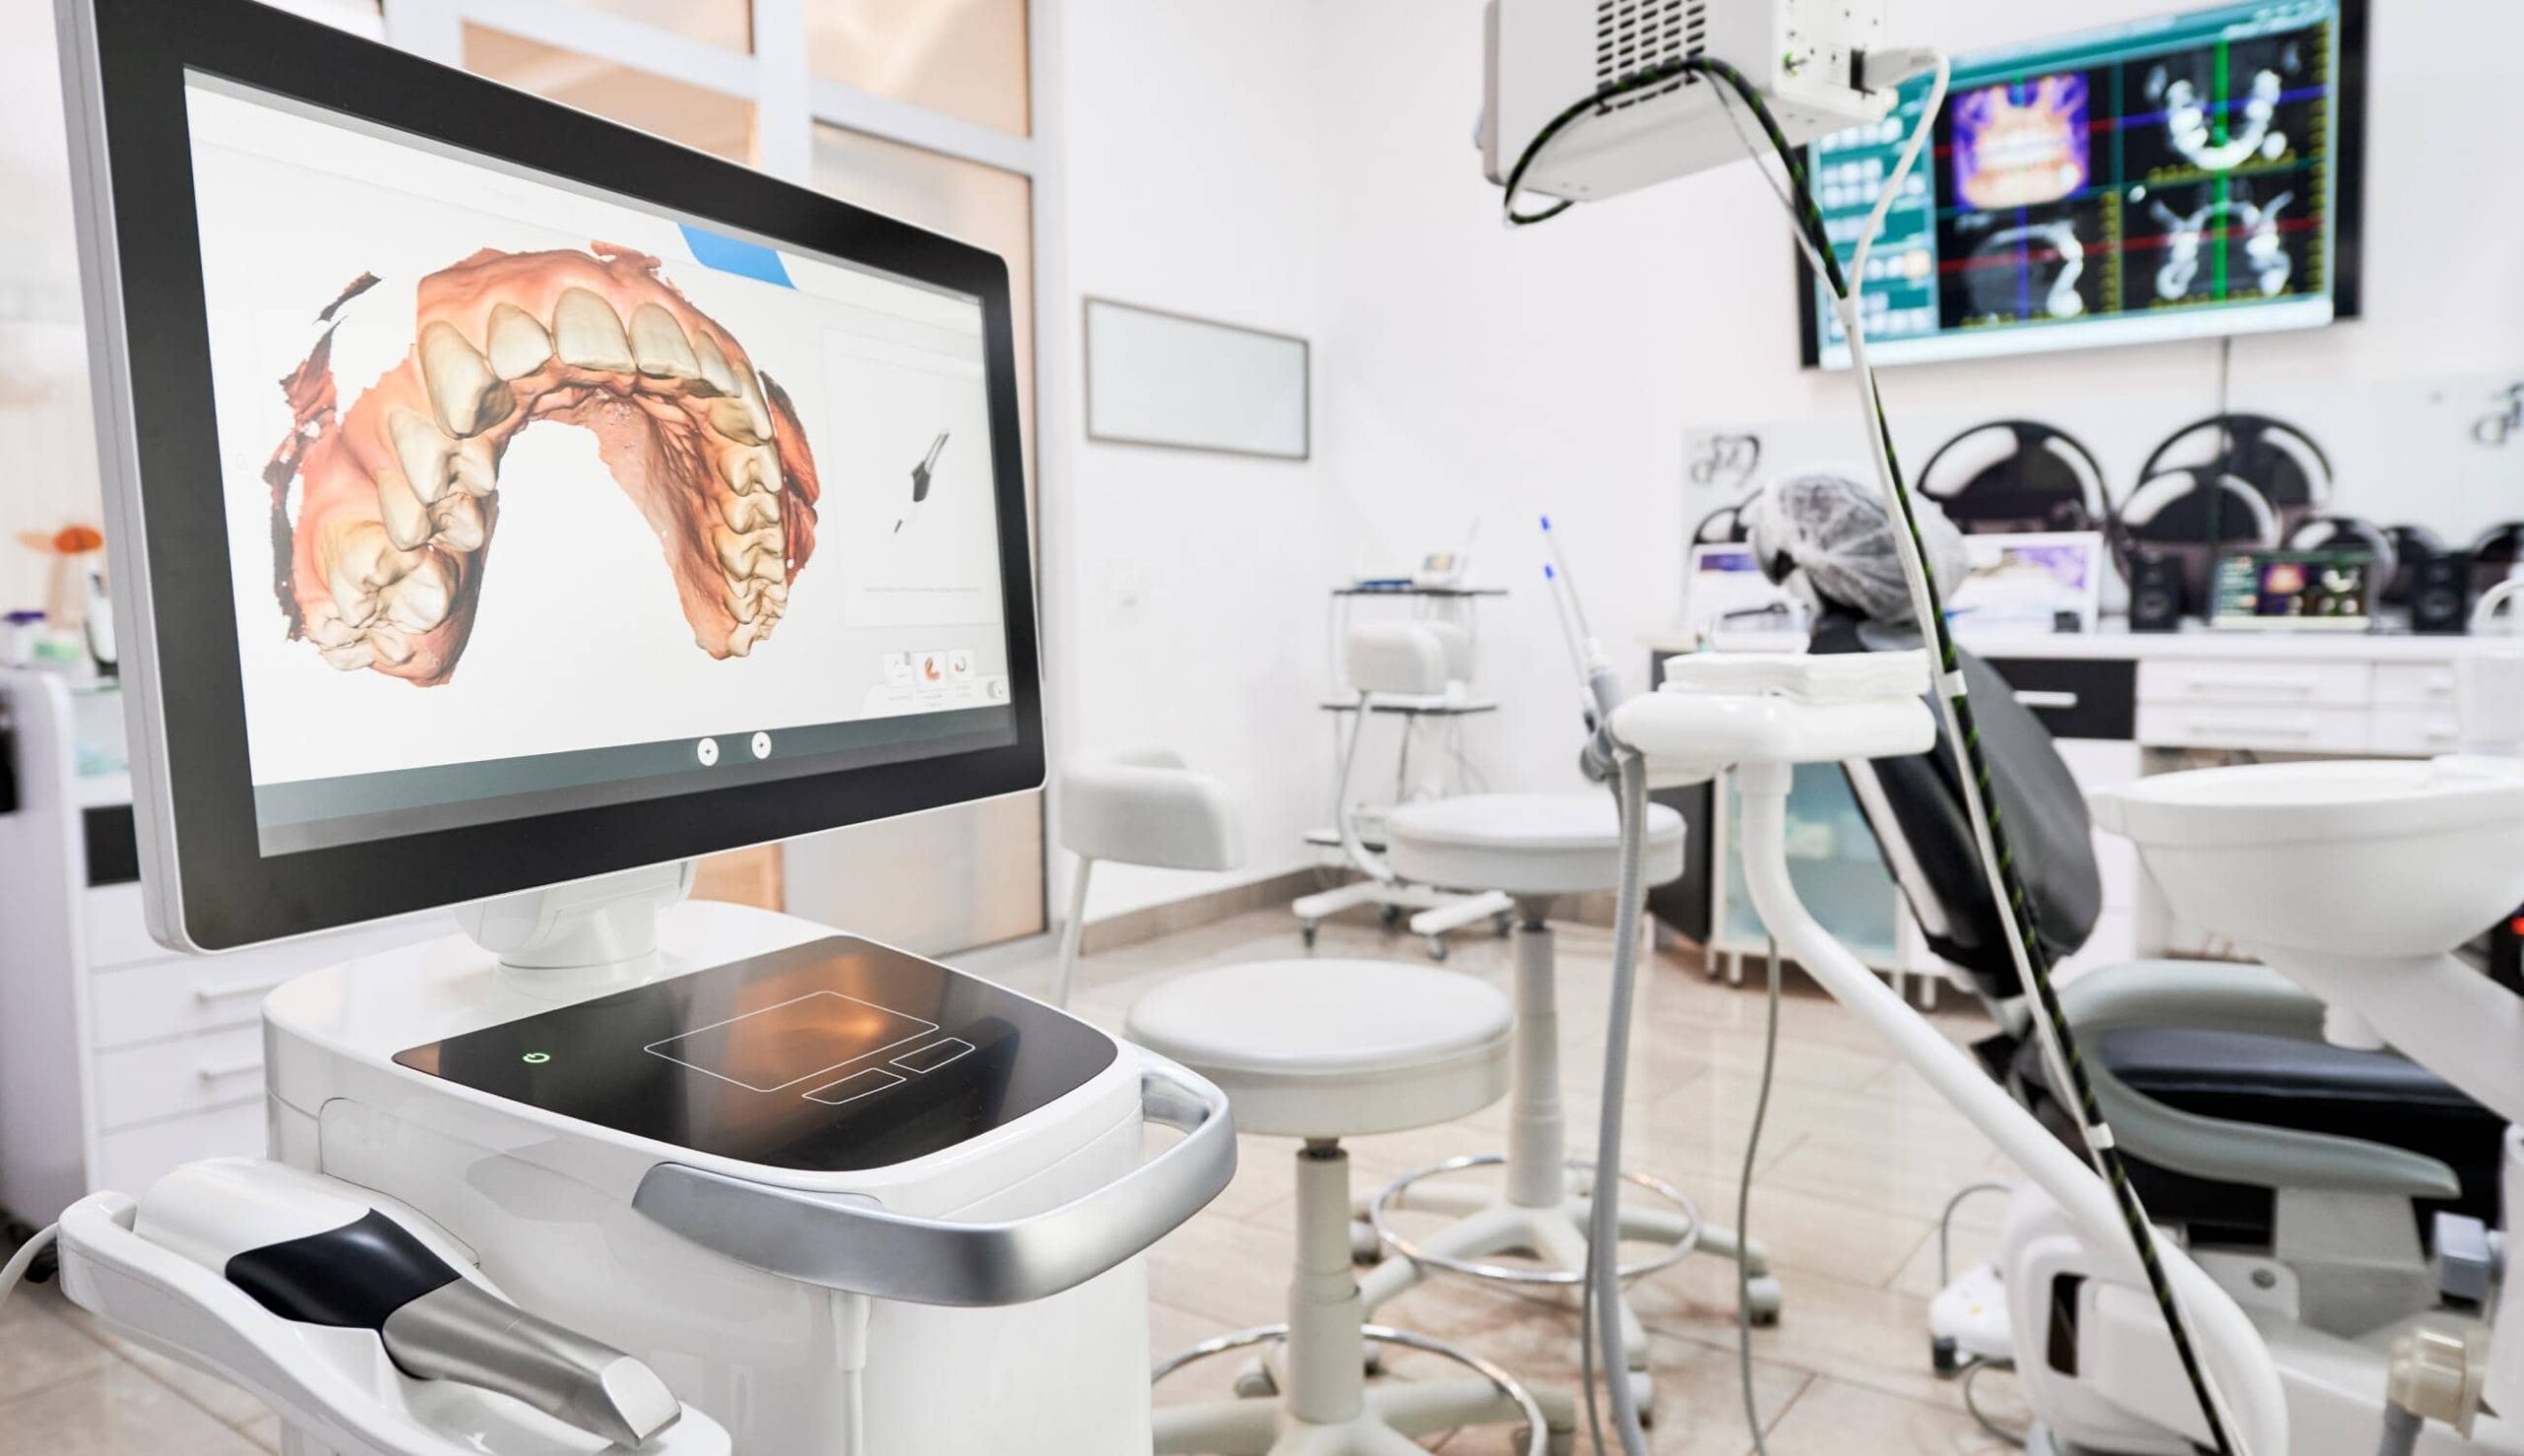 Le scanner numérique 3D : un allié pour la pose de prothèses dentaires | Clinique dentaire Sana Oris | Paris 8